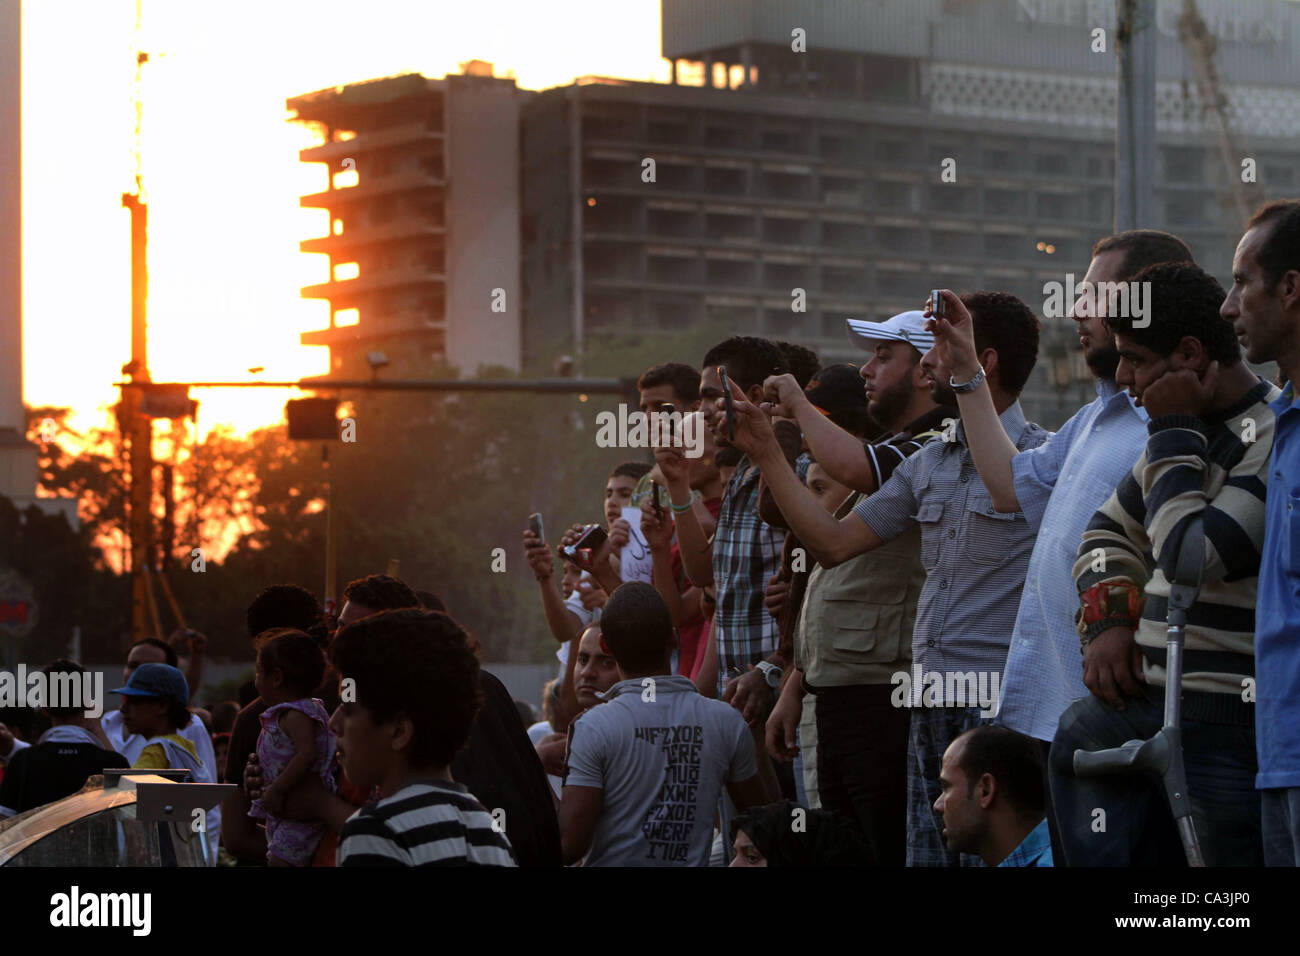 1 giugno 2012 - Il Cairo, il Cairo, Egitto - i dimostranti egiziani chant slogan contro egiziano candidato presidenziale Ahmed Shafiq in piazza Tahrir condannare il risultato del primo turno di votazioni in egiziani di elezione presidenziale in Cairo, Egitto, venerdì 1 giugno, 2012. Diverse centinaia di manifestanti rallie Foto Stock